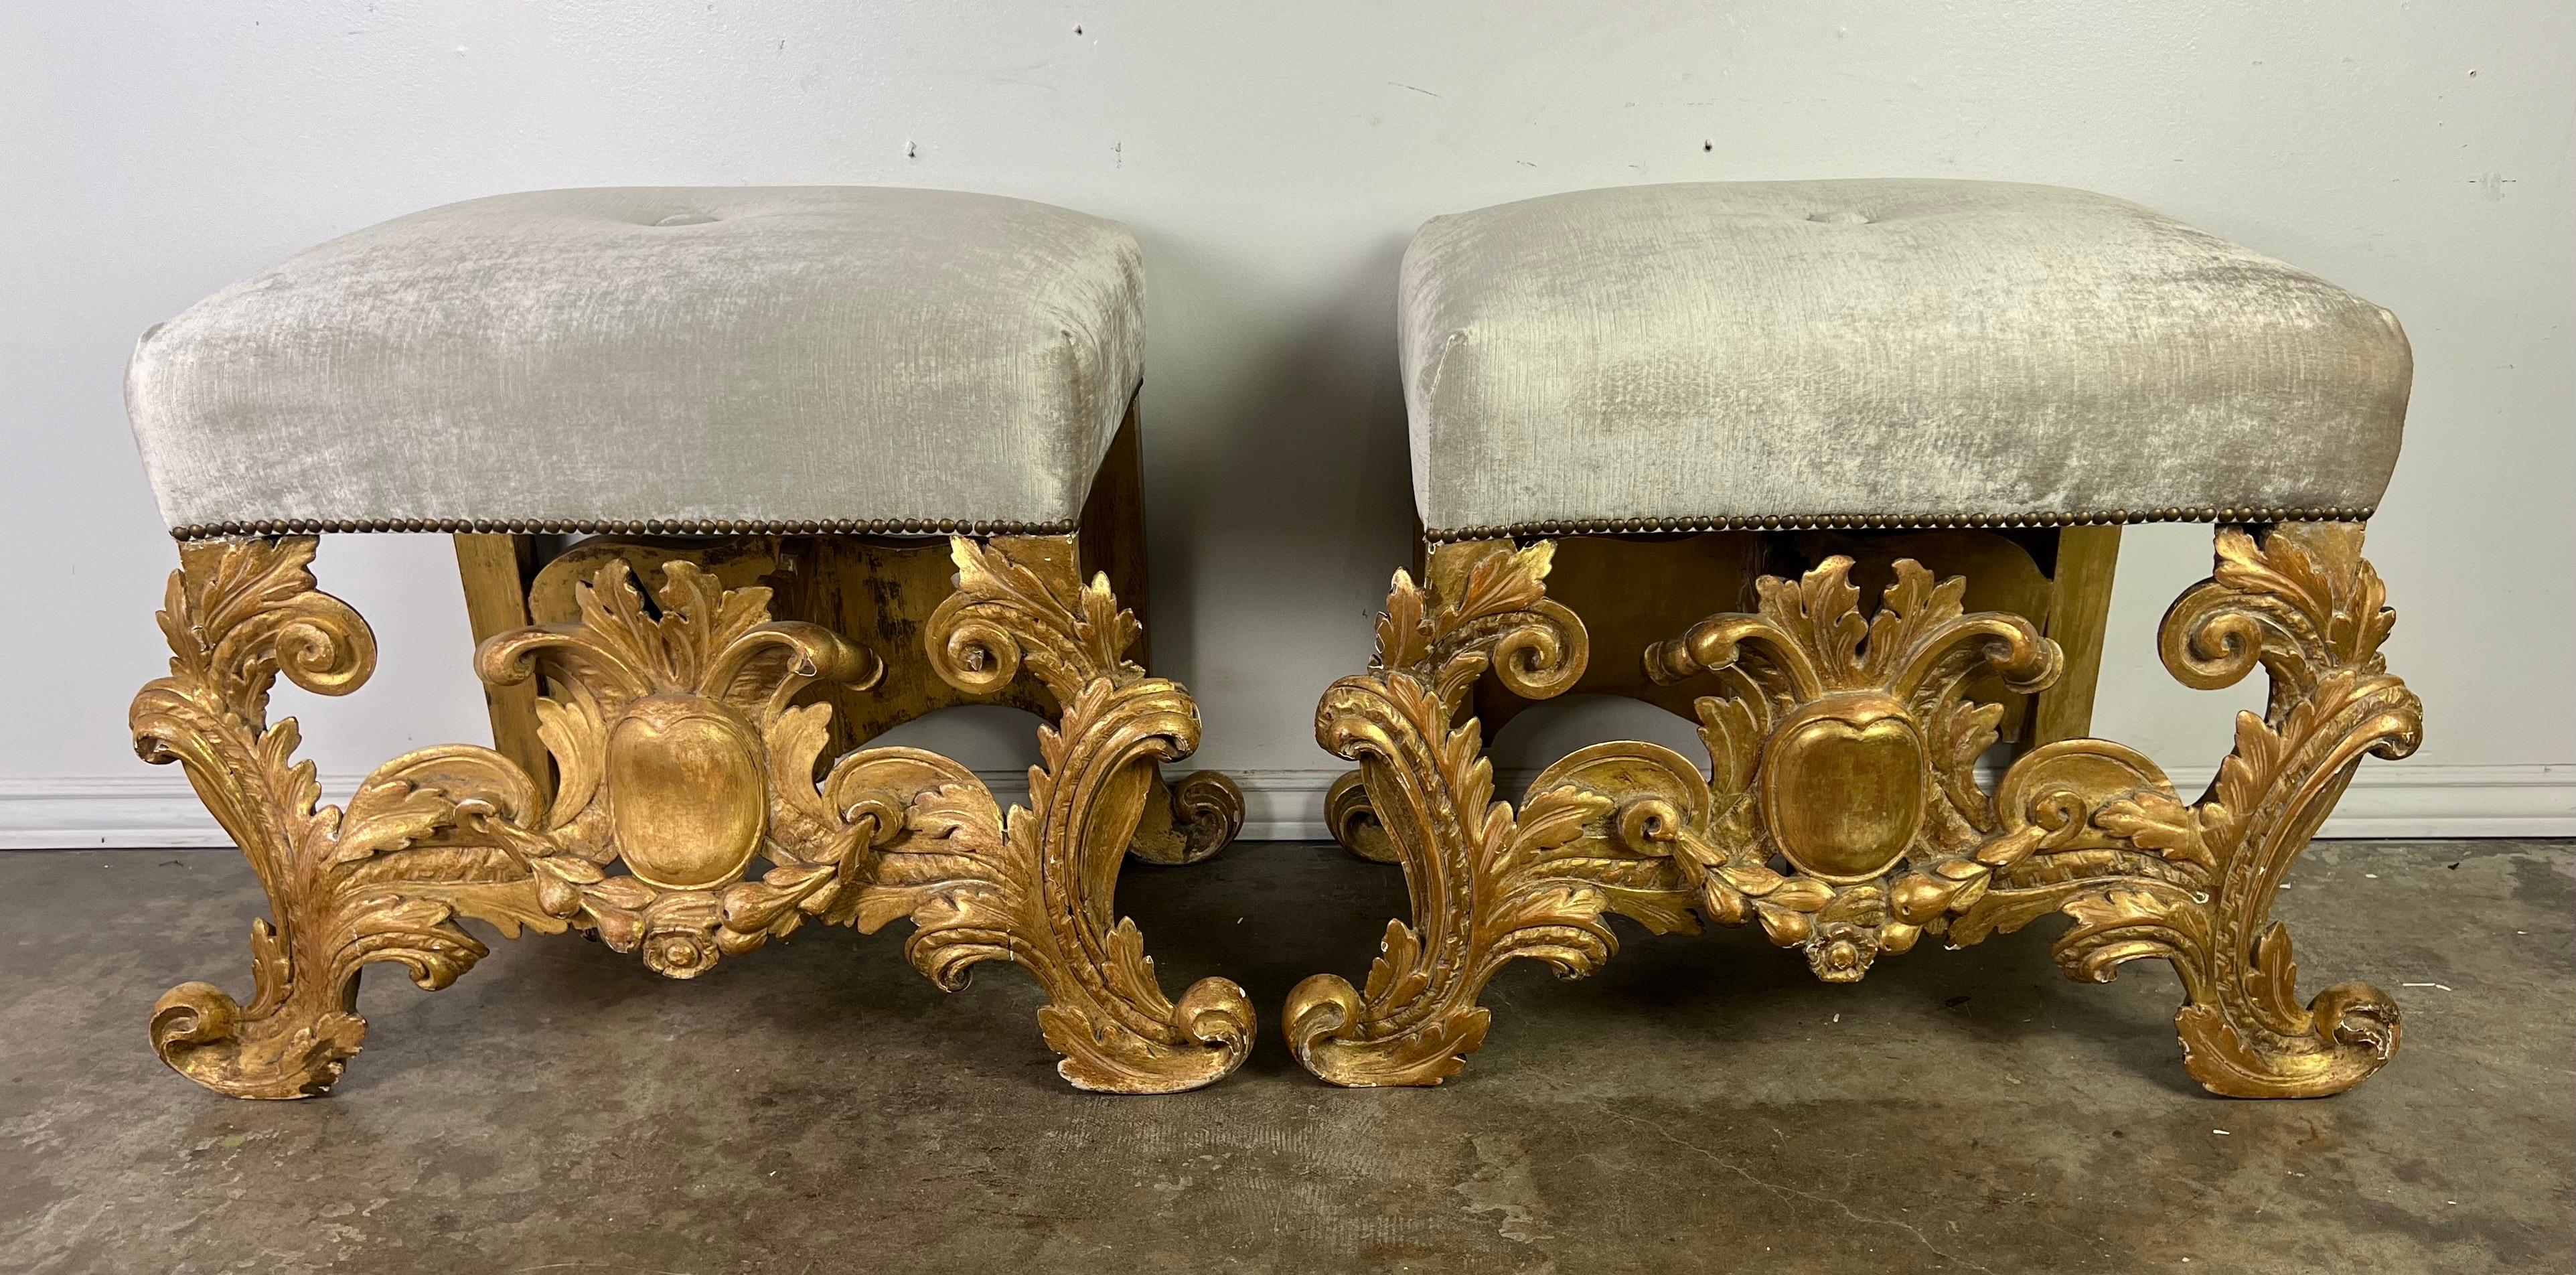 Bancs de style baroque italien, chacun rayonnant de l'opulence et de la grandeur de l'époque.  Ces bancs témoignent de l'esthétique somptueuse du baroque : leur cadre en bois doré est recouvert d'une feuille d'or 22 carats qui scintille à la